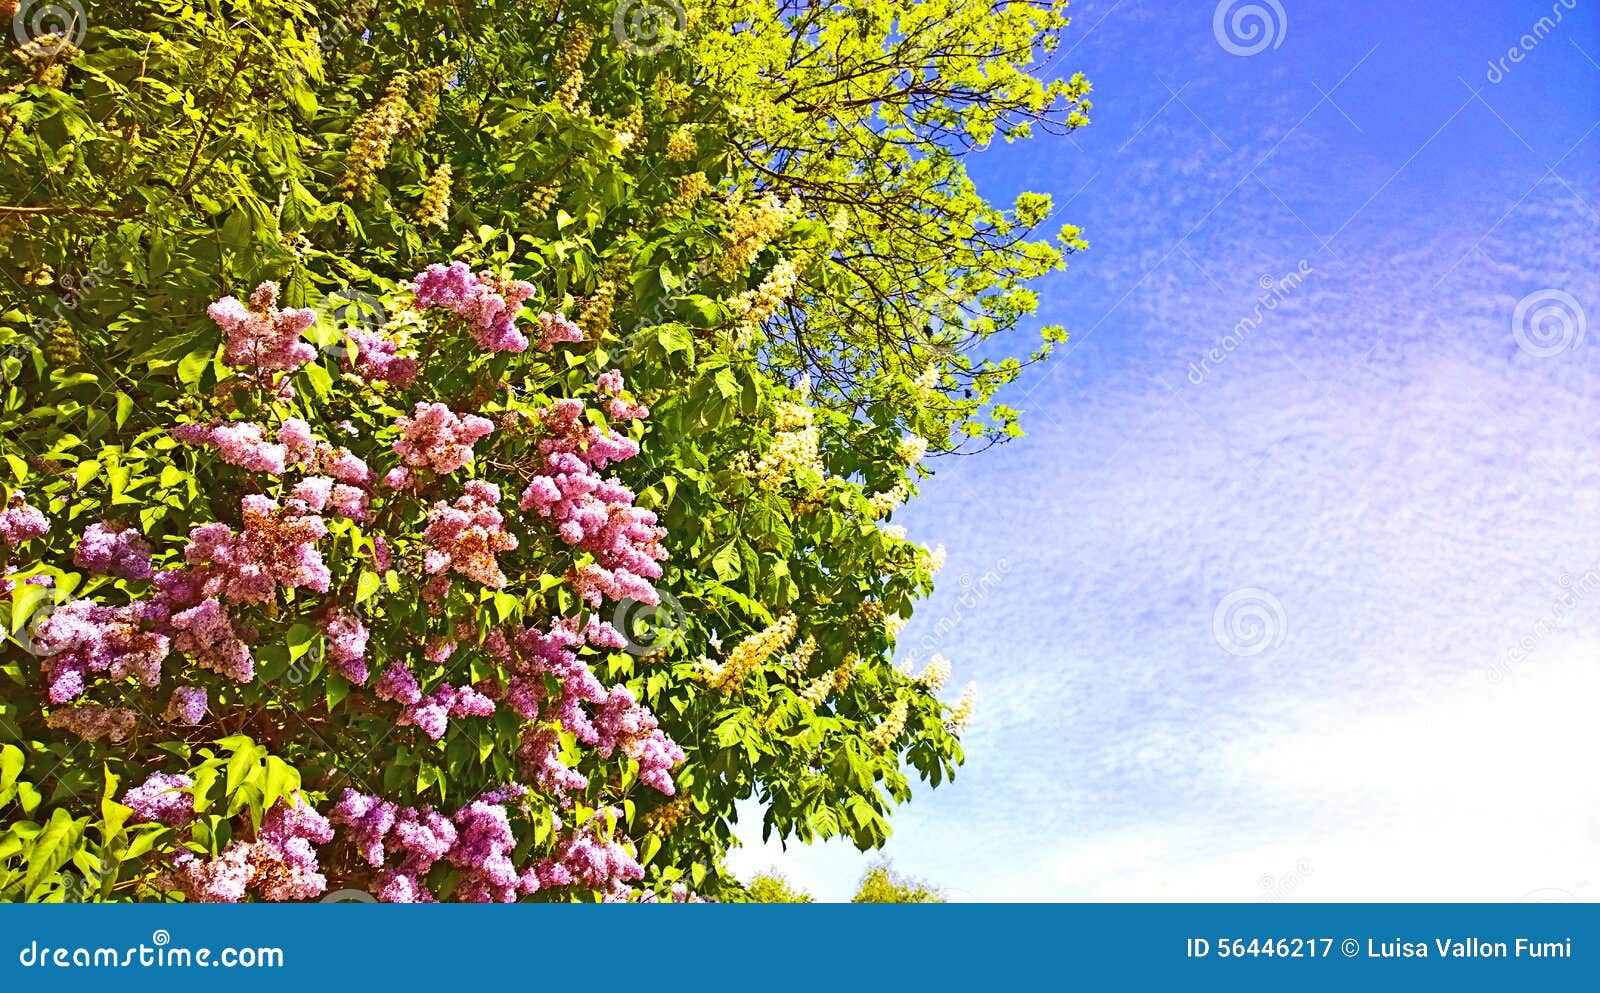 Acaciaboom Met Witte Bloemen En Lilac Bloesems Op De Lente Stock